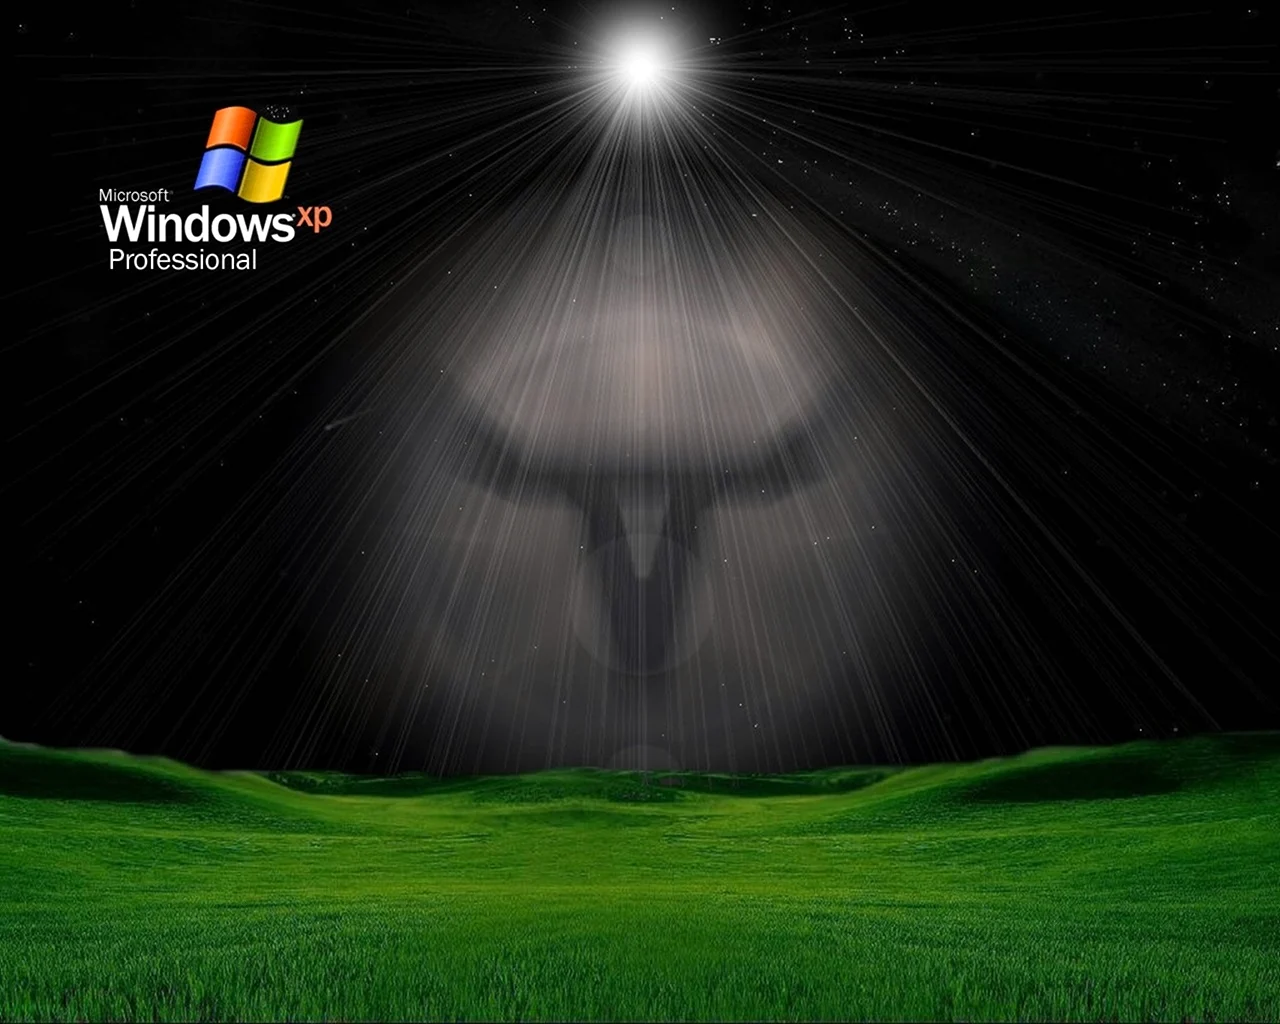 Виндовс XP